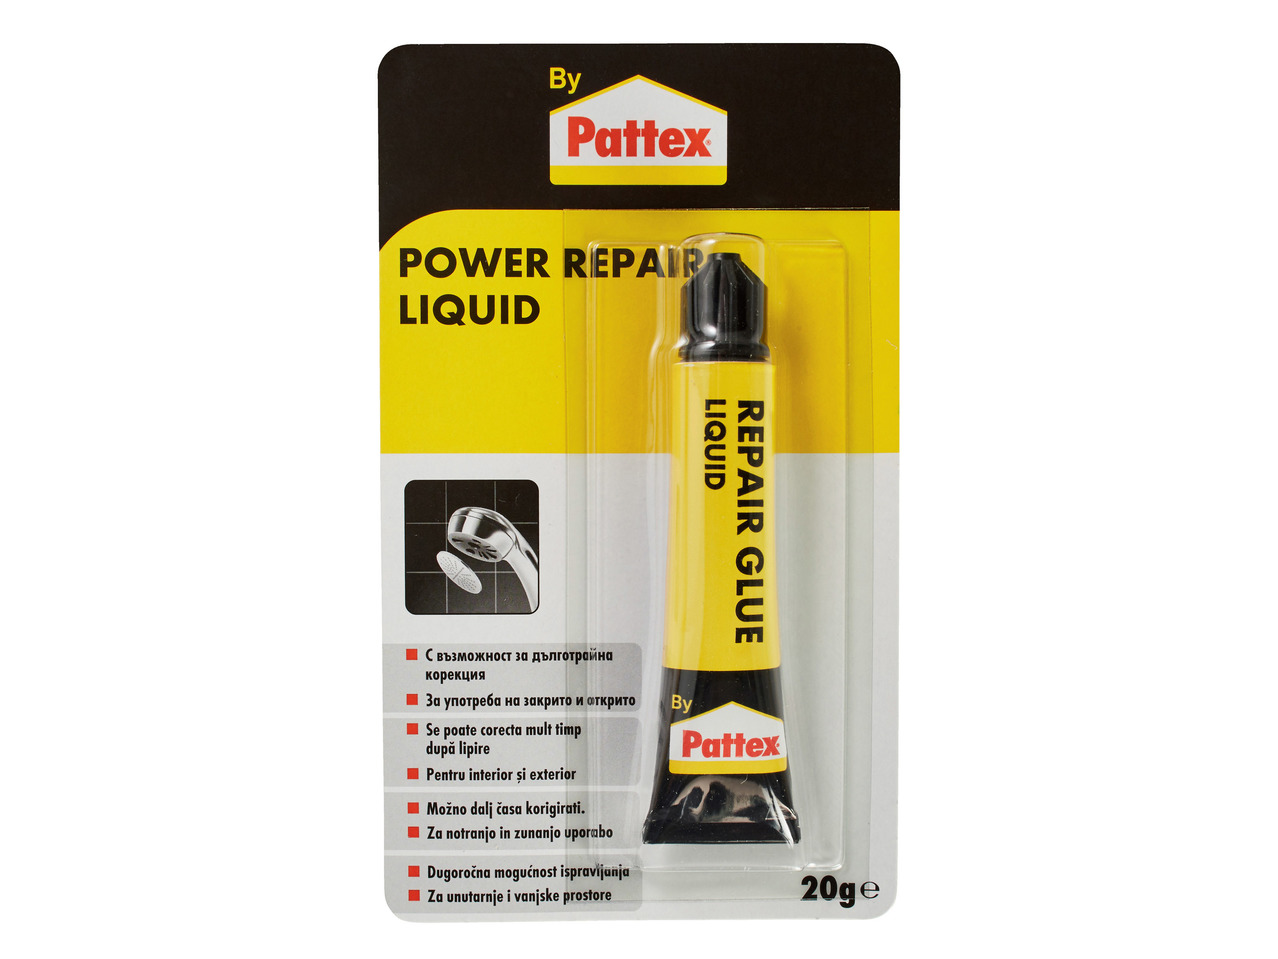 Power Repair Liquid